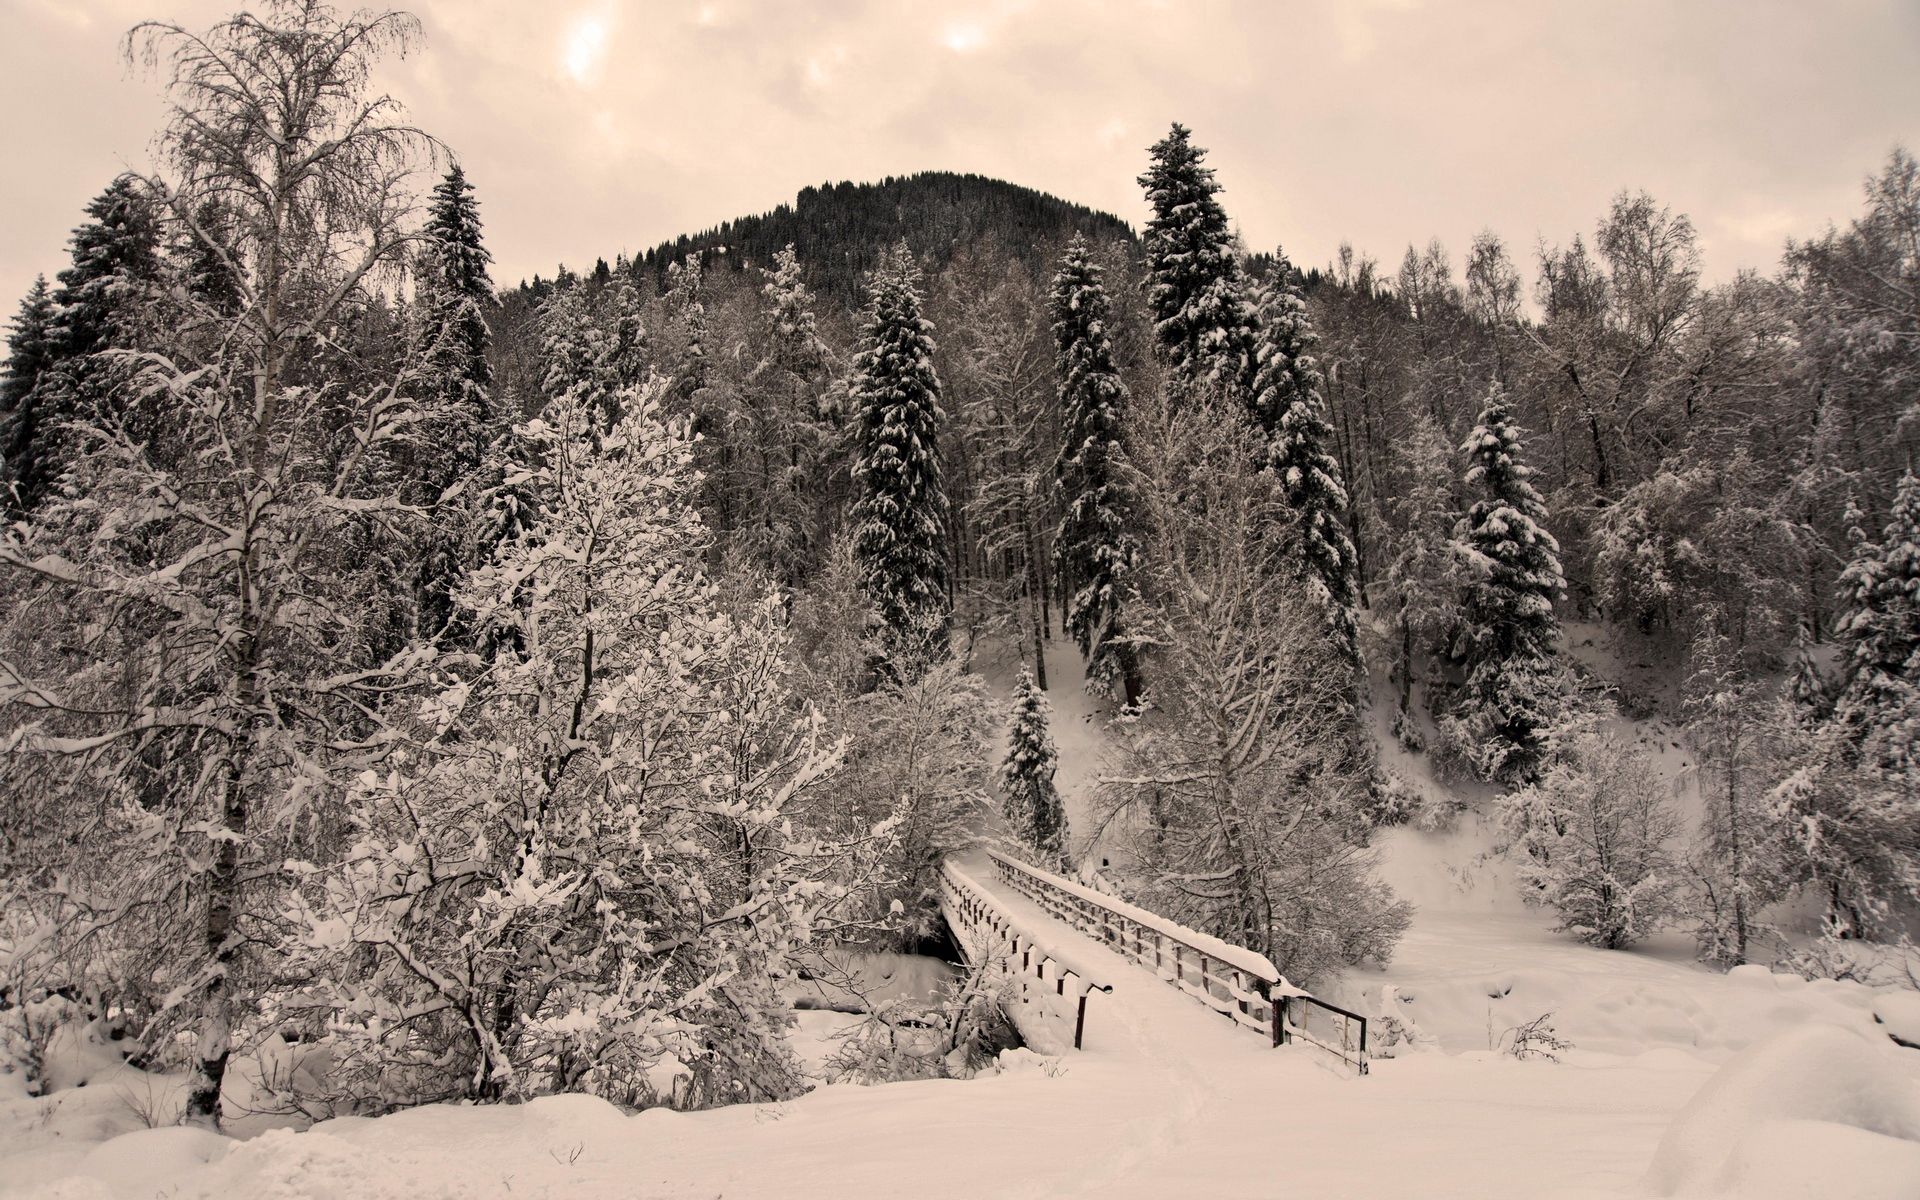 creepy, winter, nature, trees, snow, bridge, frost, hoarfrost, gloomy, severity, heaviness